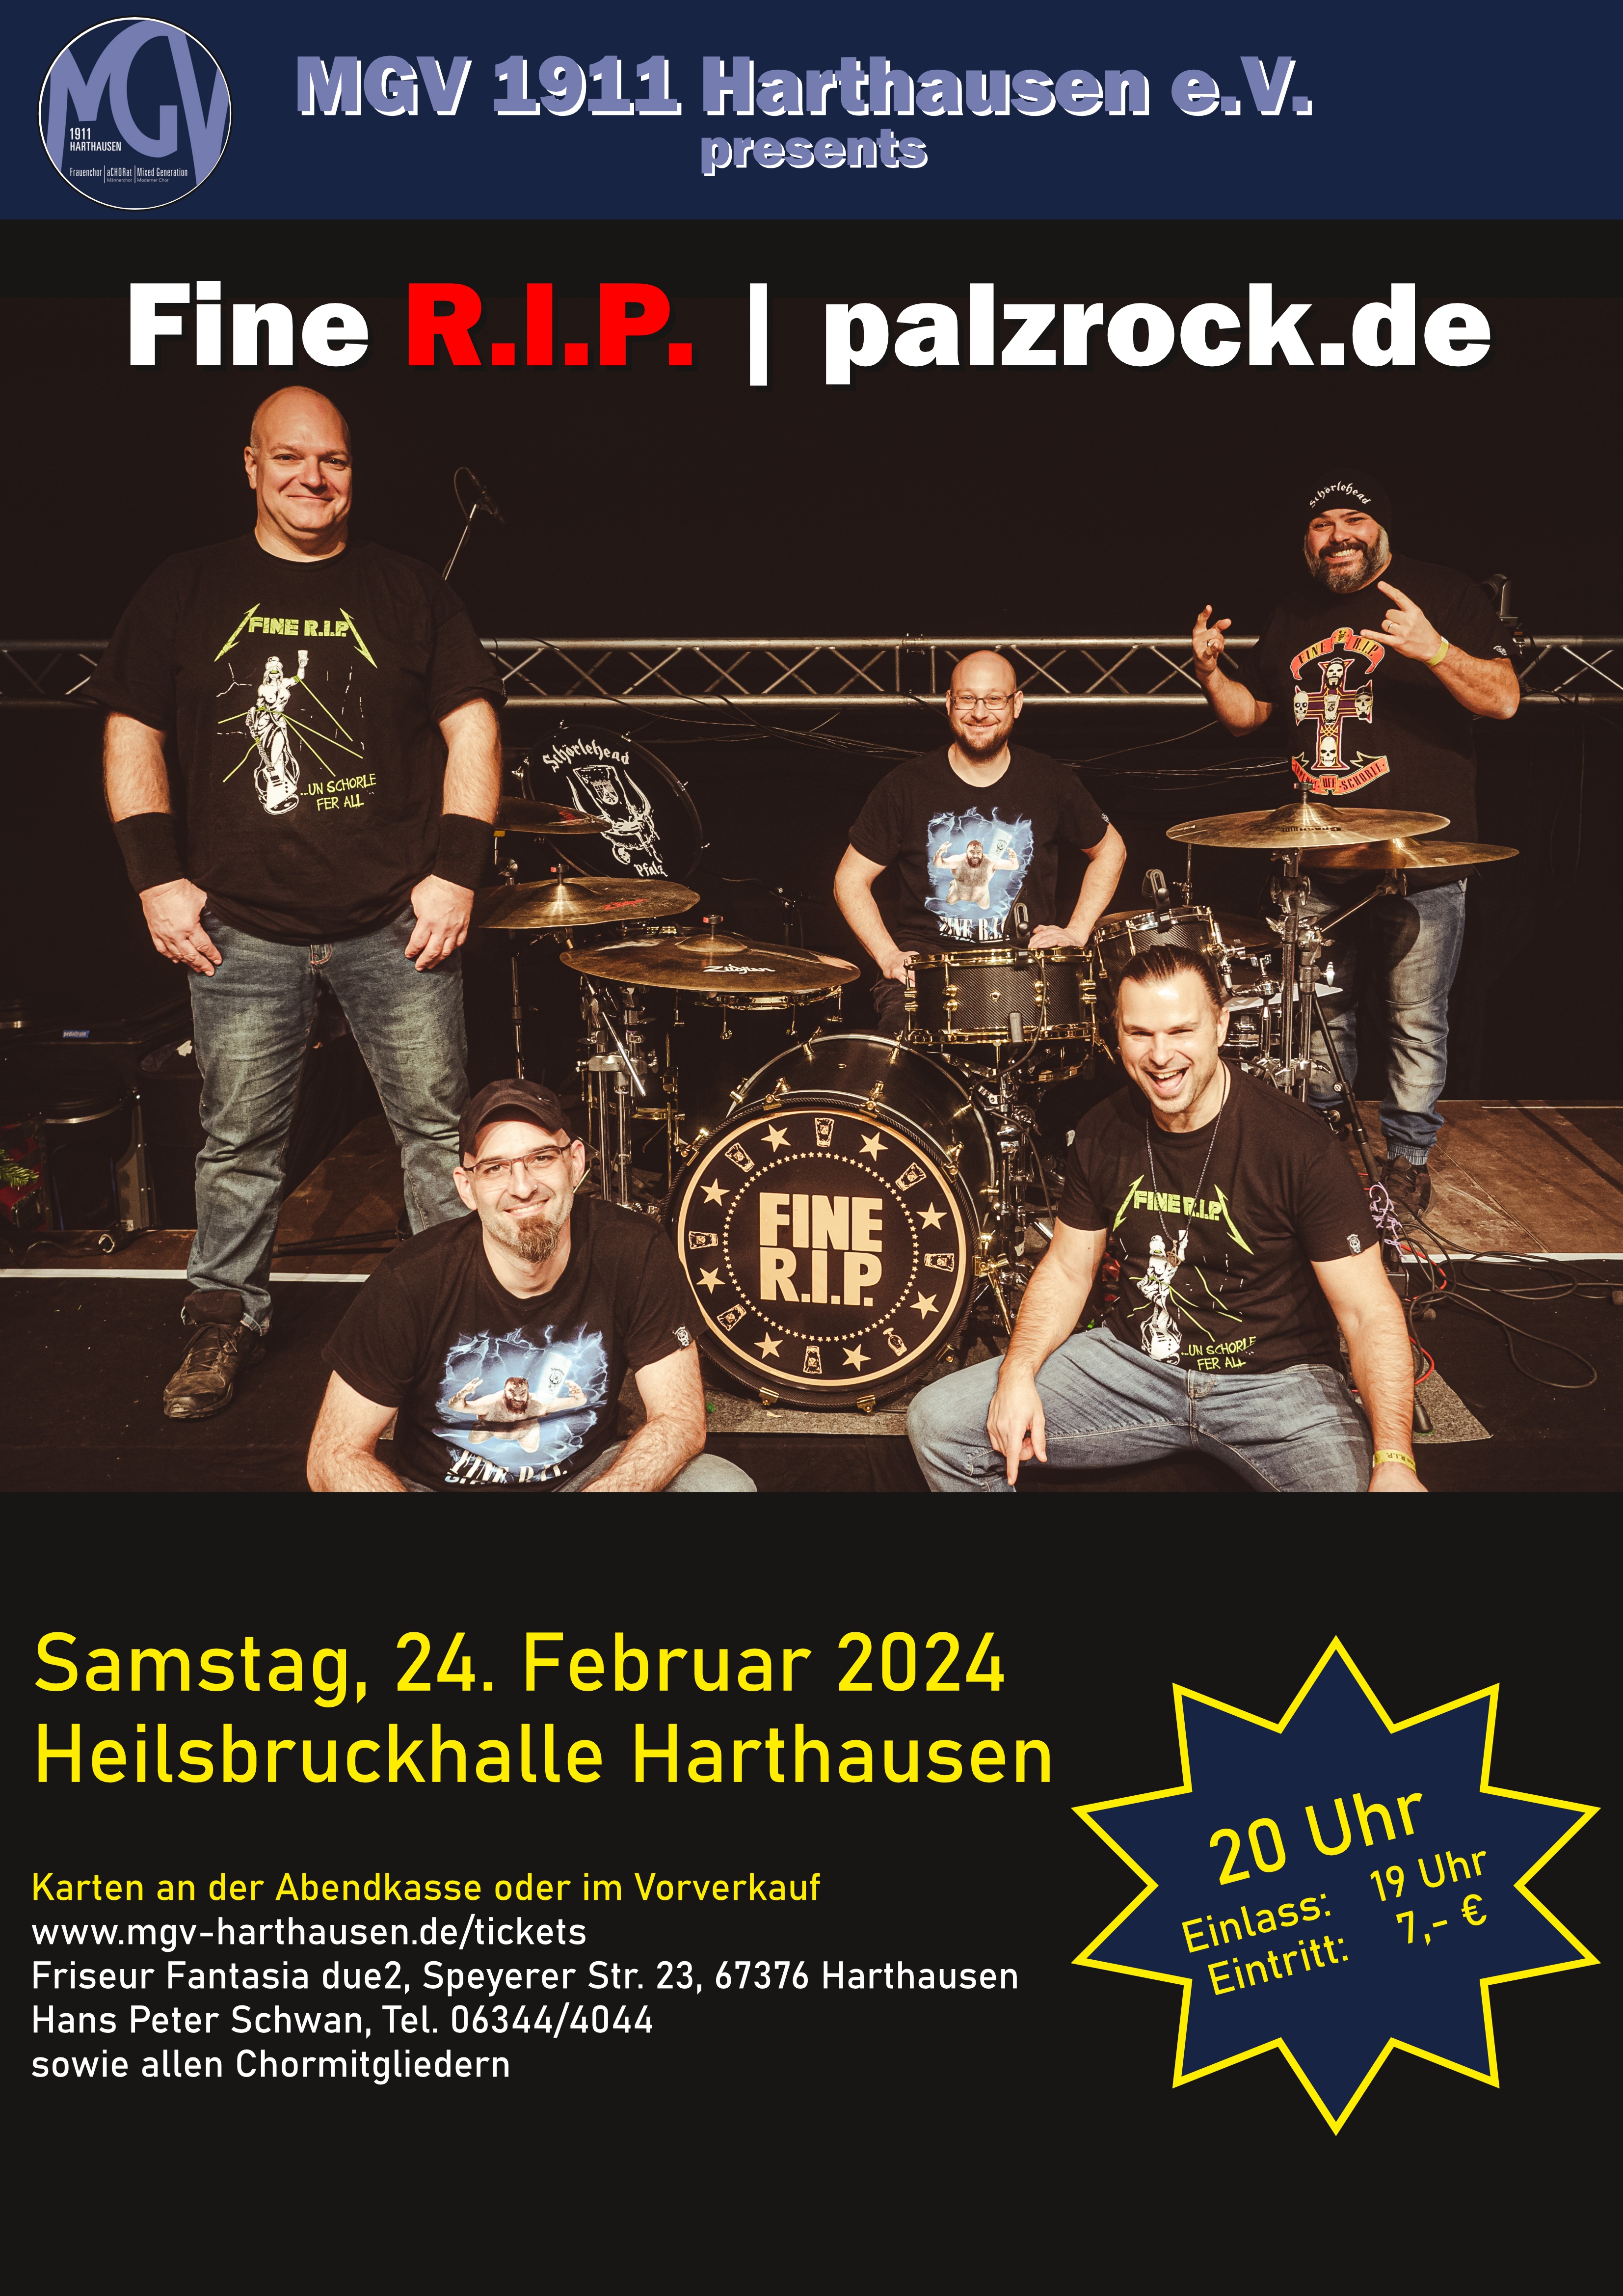 Plakat: Fine R.I.P.-Konzert in der Heilsbruckhalle Harthausen am 10.11.2023